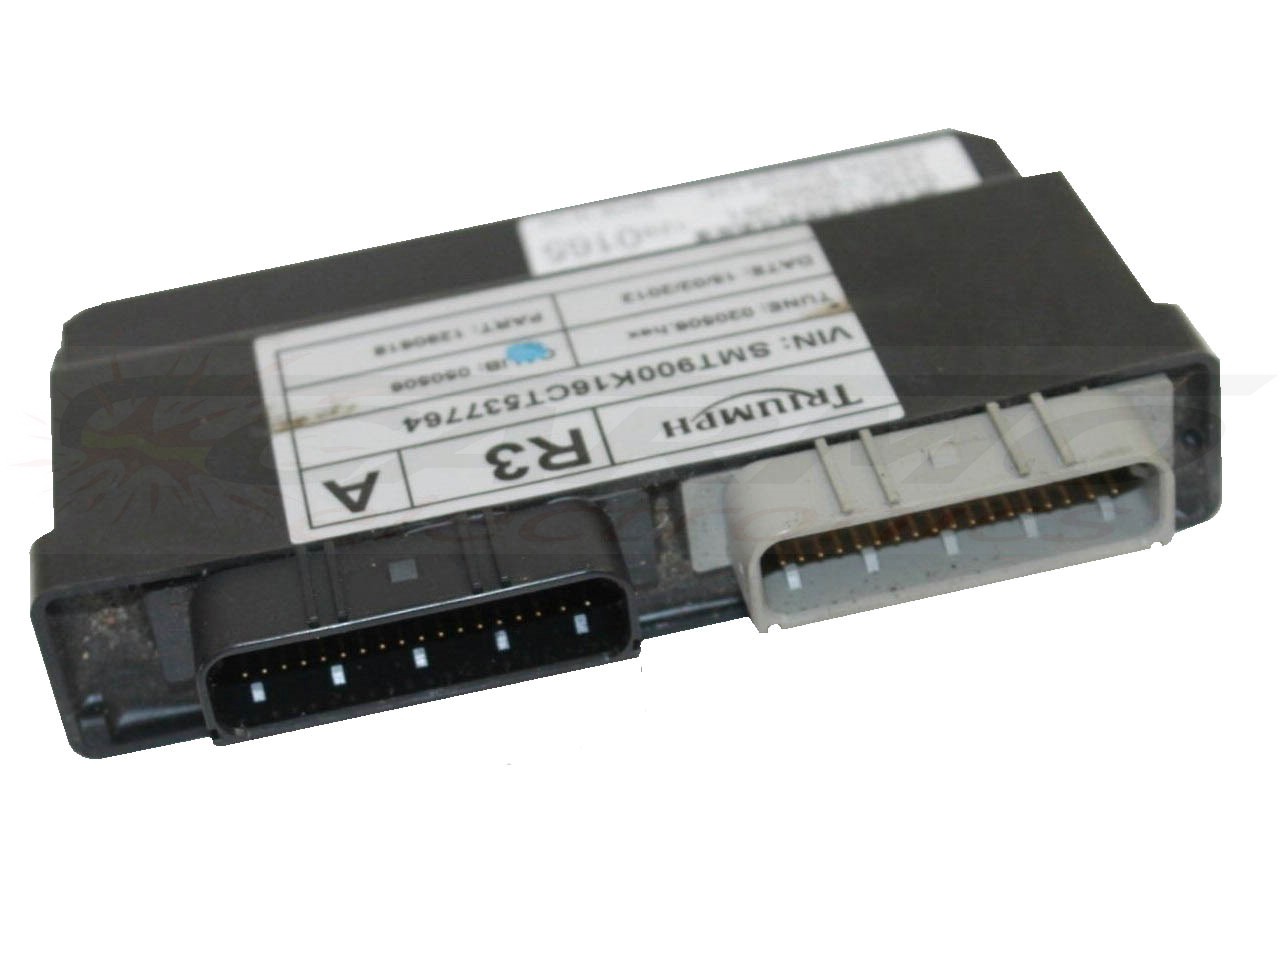 Bonneville T100 ECU ECM CDI controlador de caixa preta de computador (636D-190G-0B0, 7618-172543, 649D-190G-0B1, 0310-292668 )